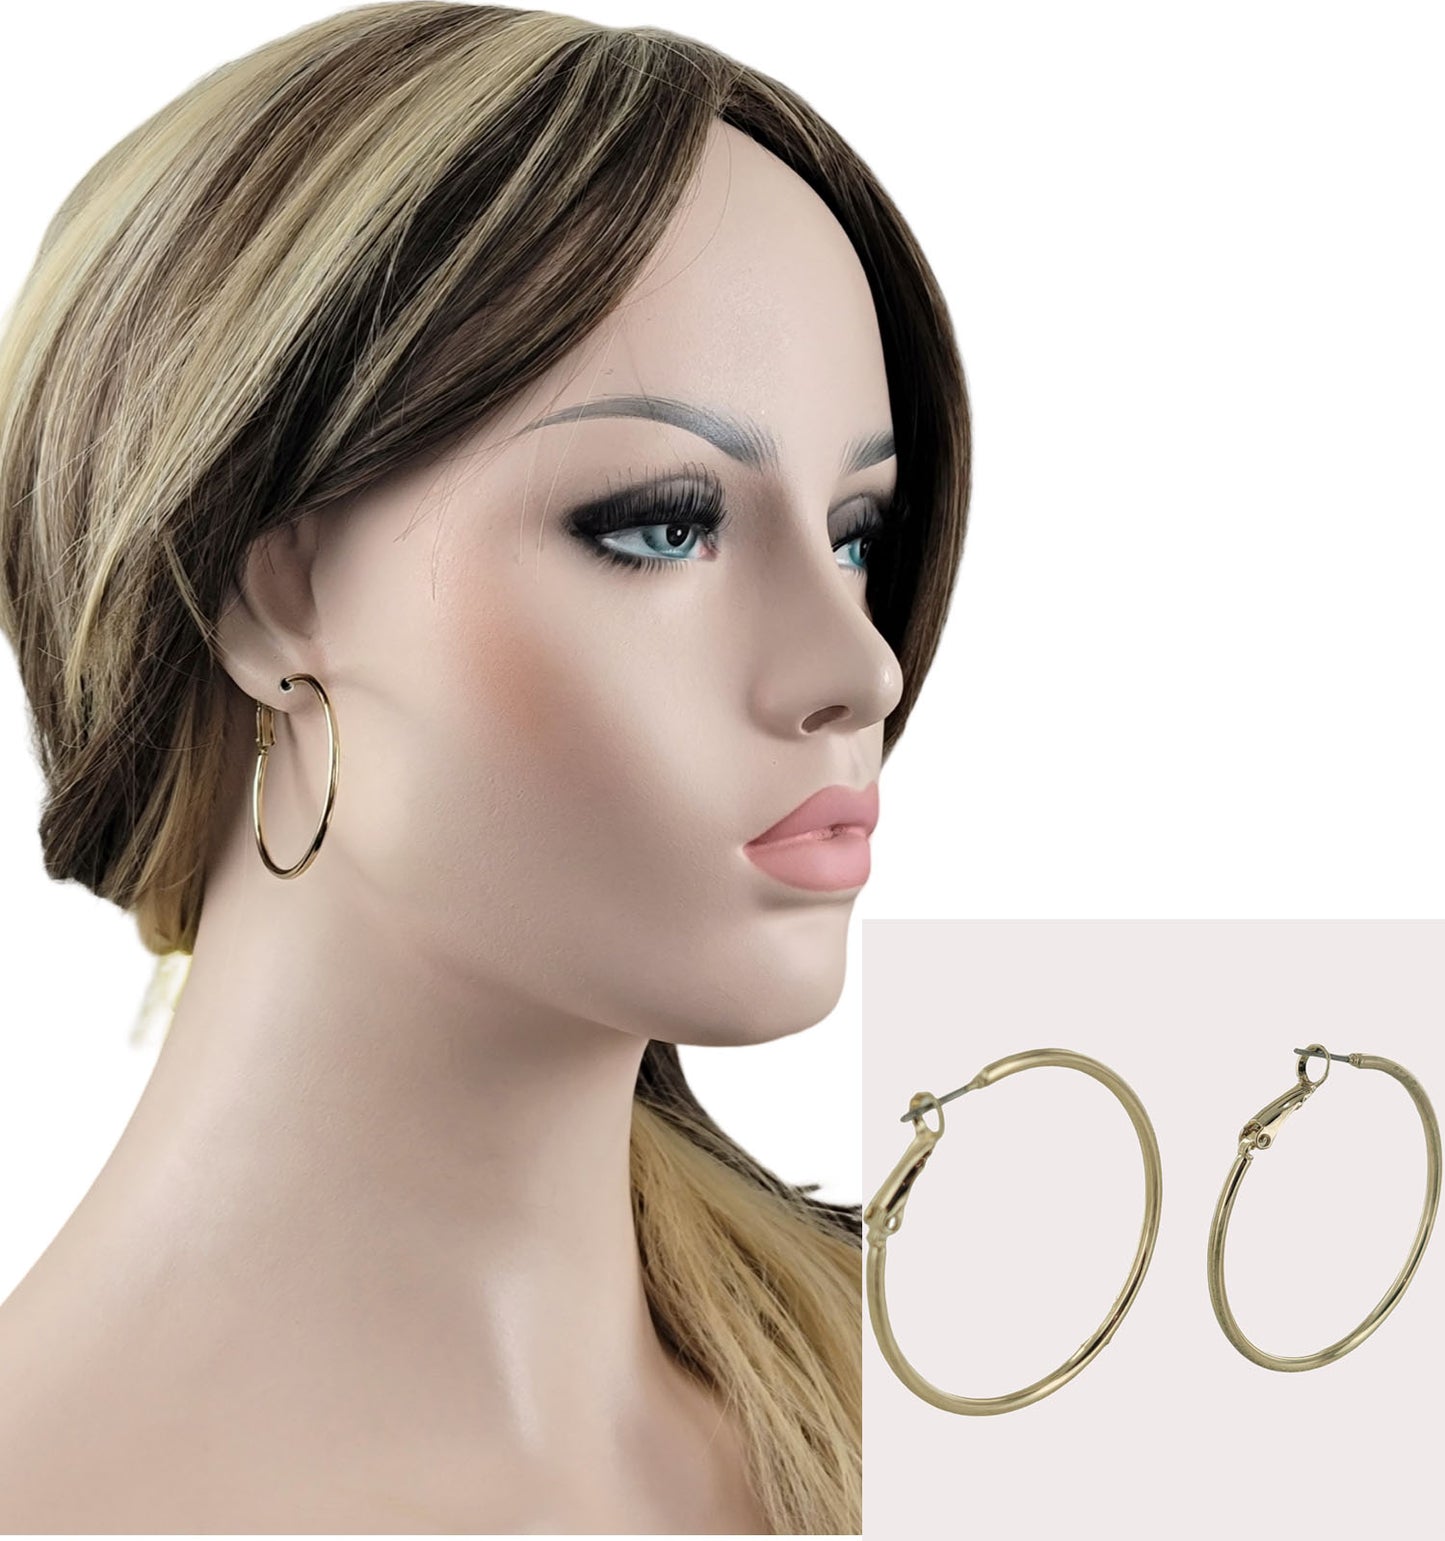 Shiny Gold Tone Wire Hoop Pierced Earrings 1.75 in